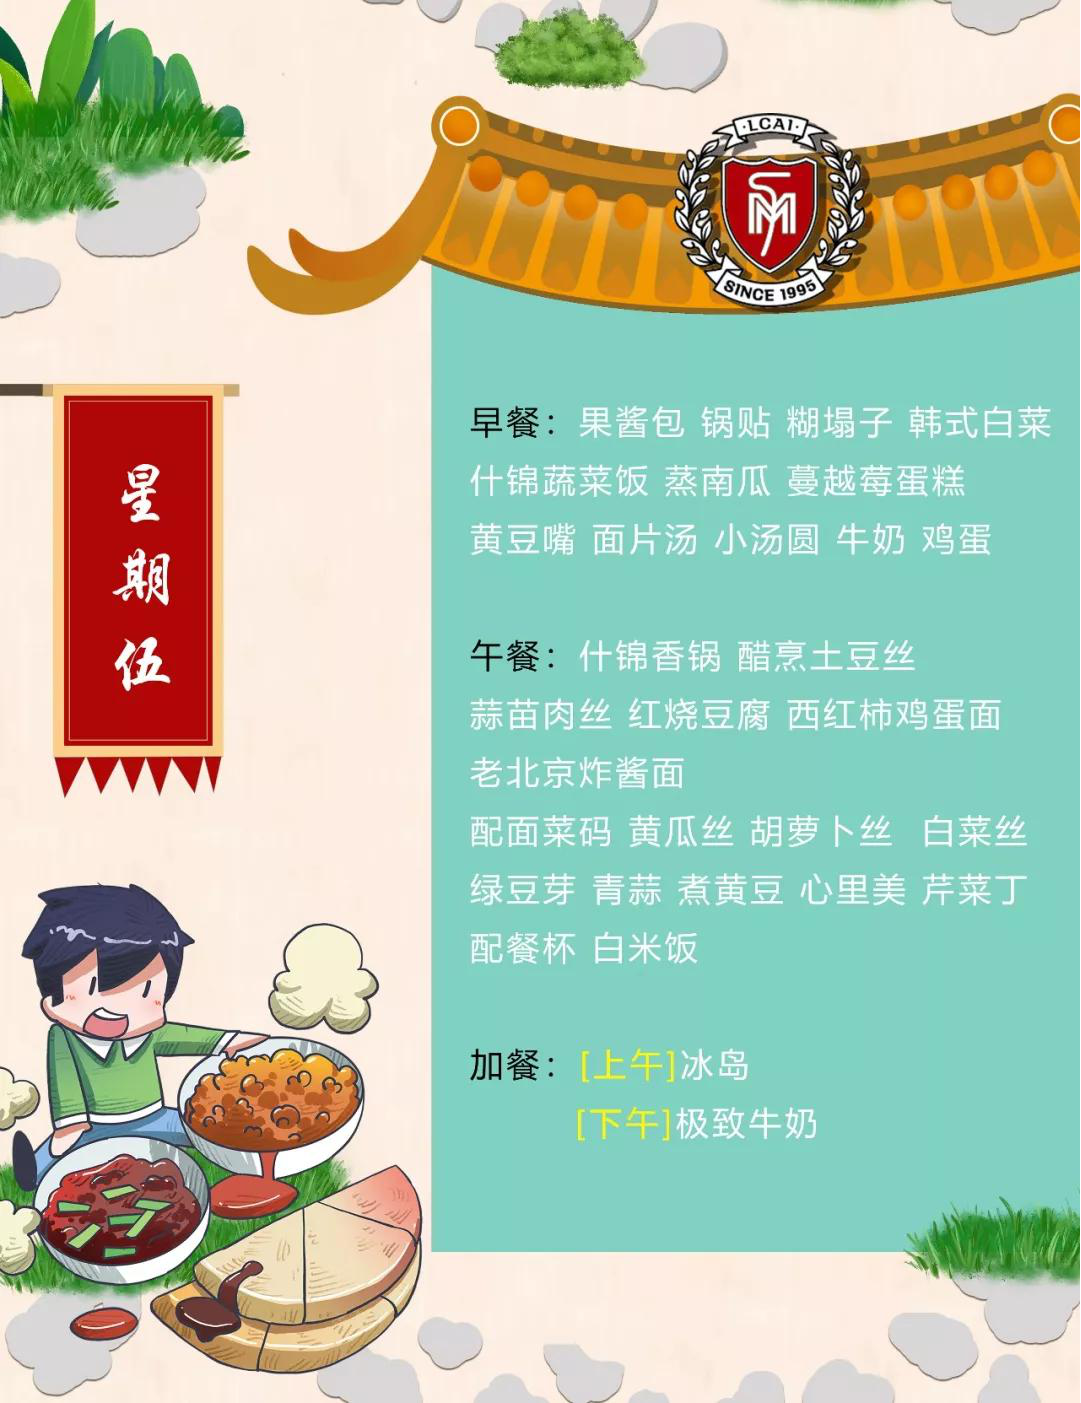 【力迈】Weekly Menu  第十五周美味菜谱 (图6)